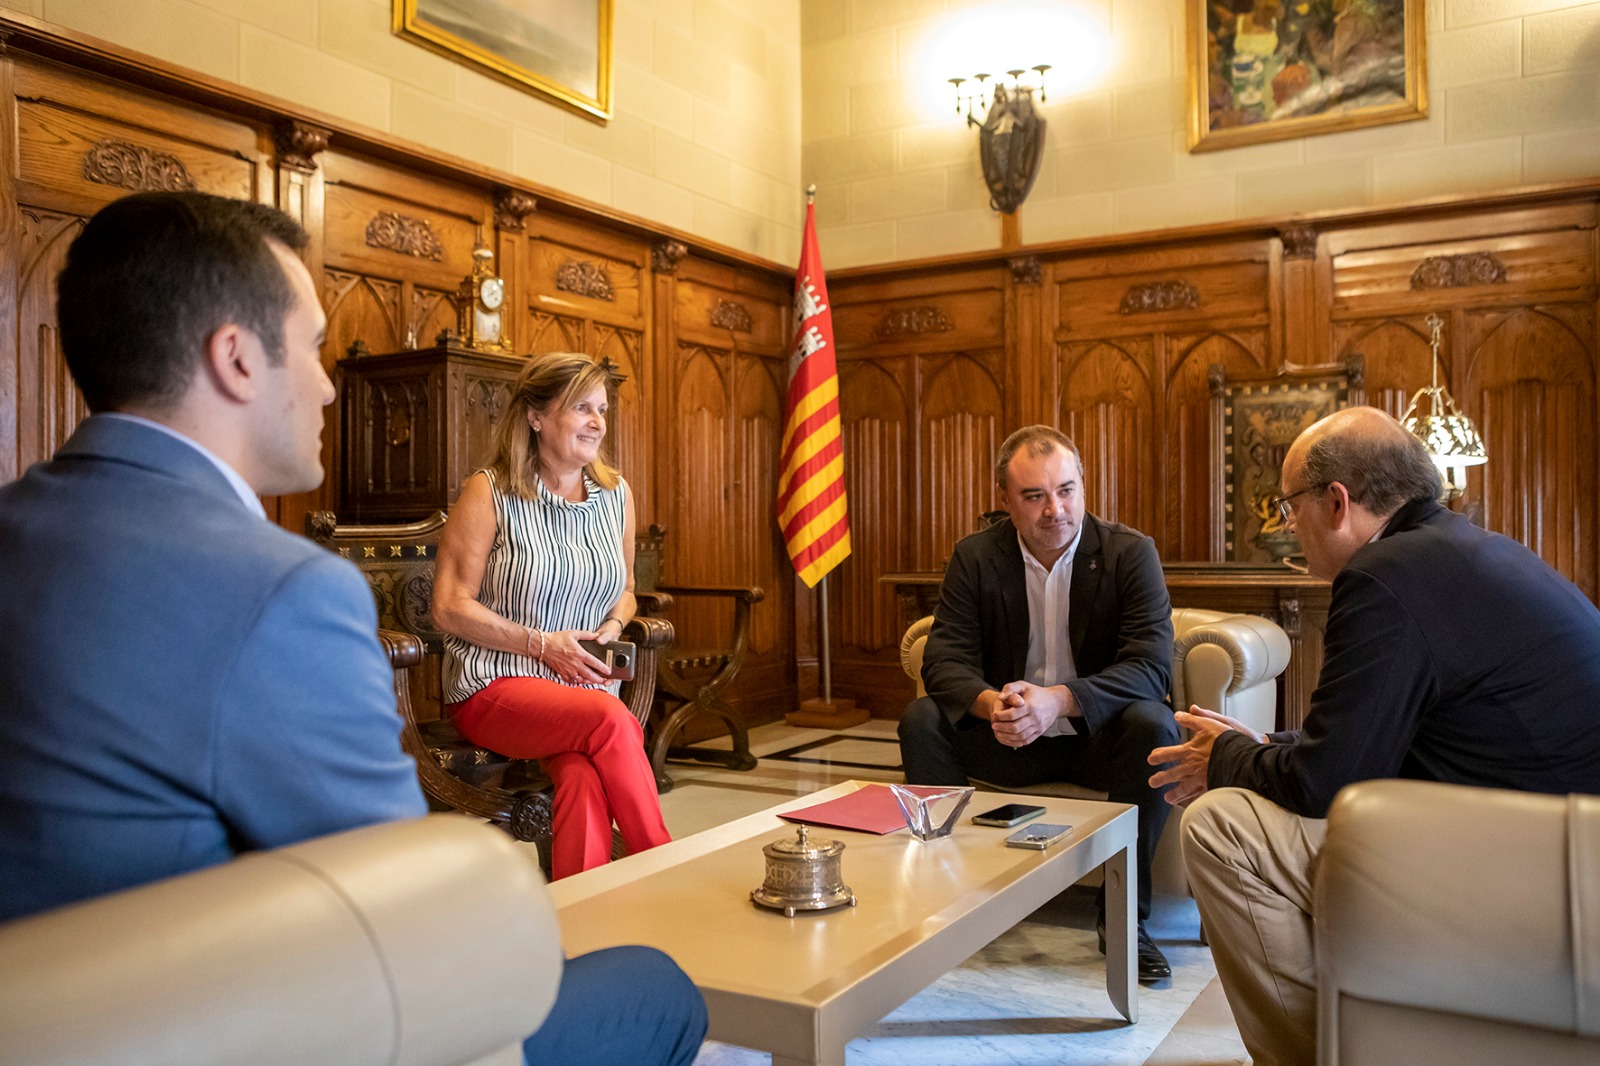 Reunió institucional entre el president Xavier Panés i l'alcalde Jordi Ballart 